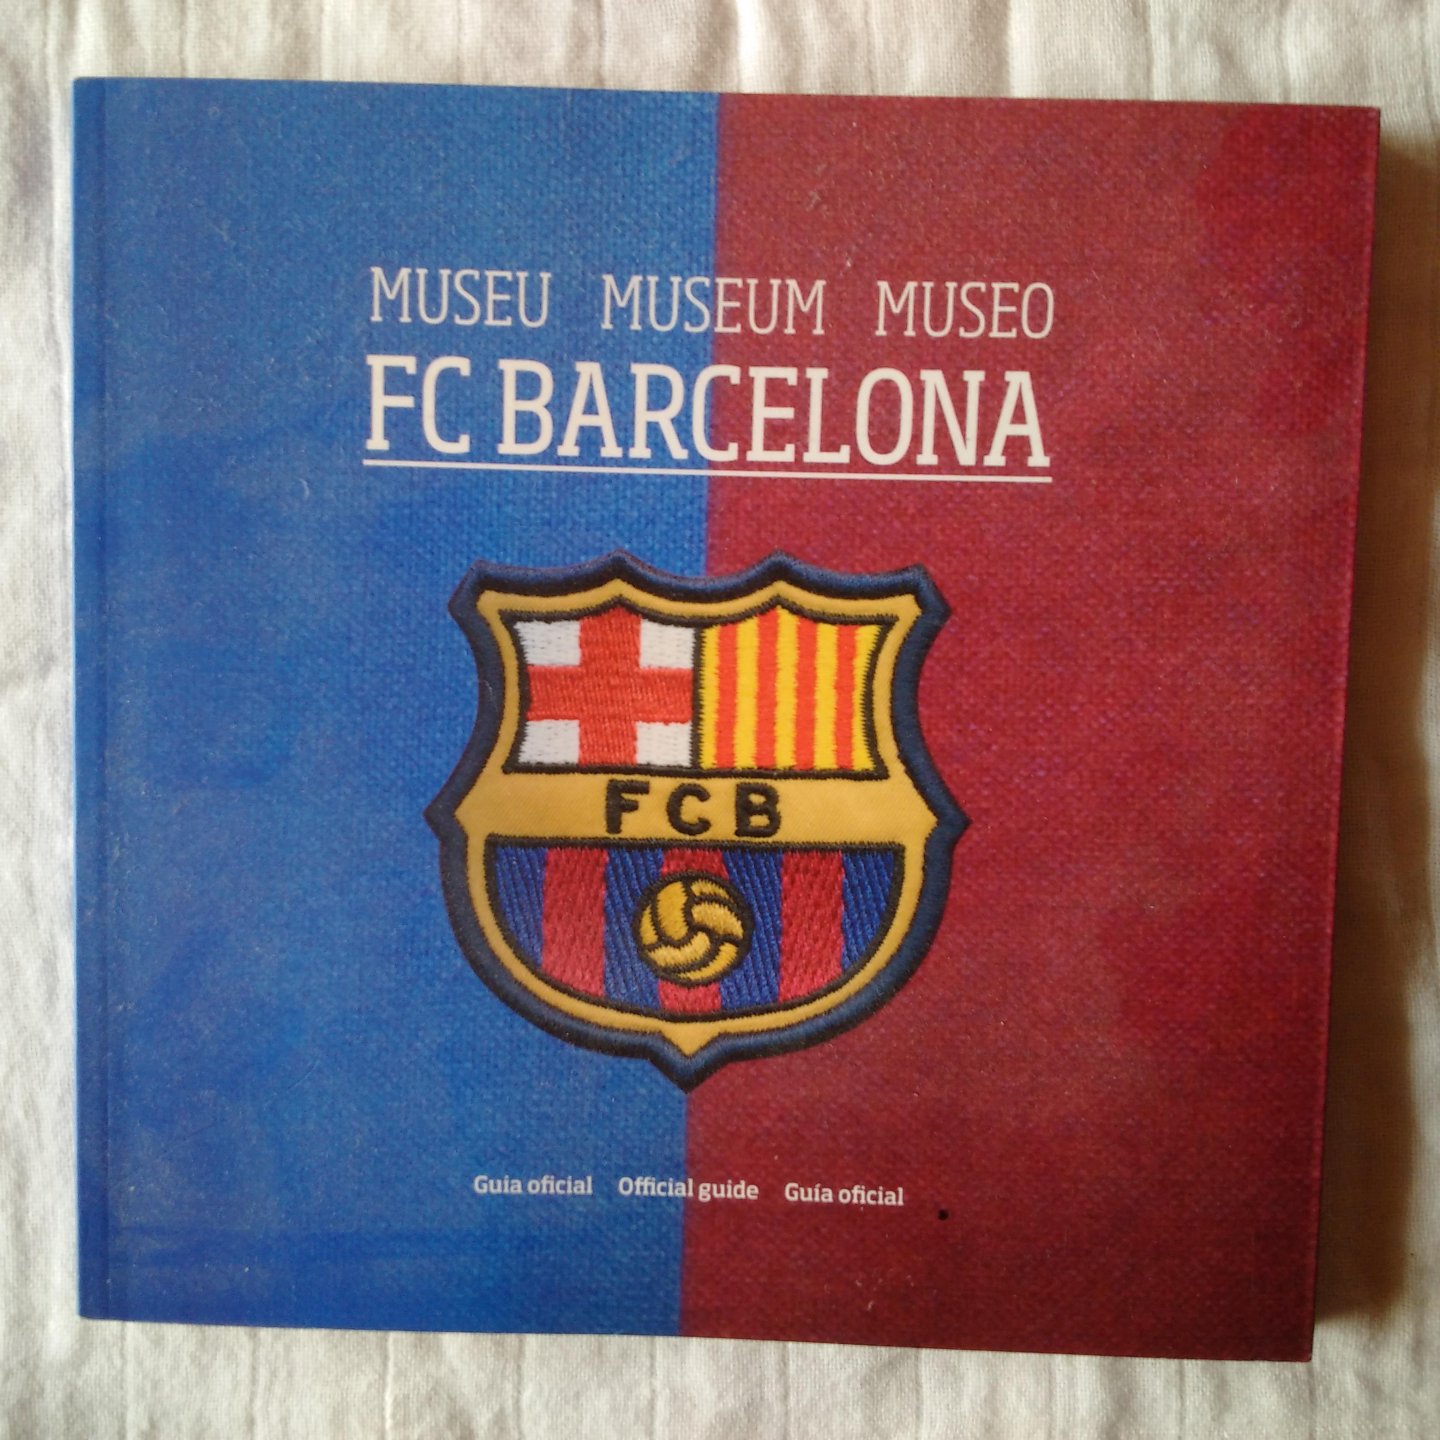 diverse auteurs - Museu-Museum-Museo FC Barcelona